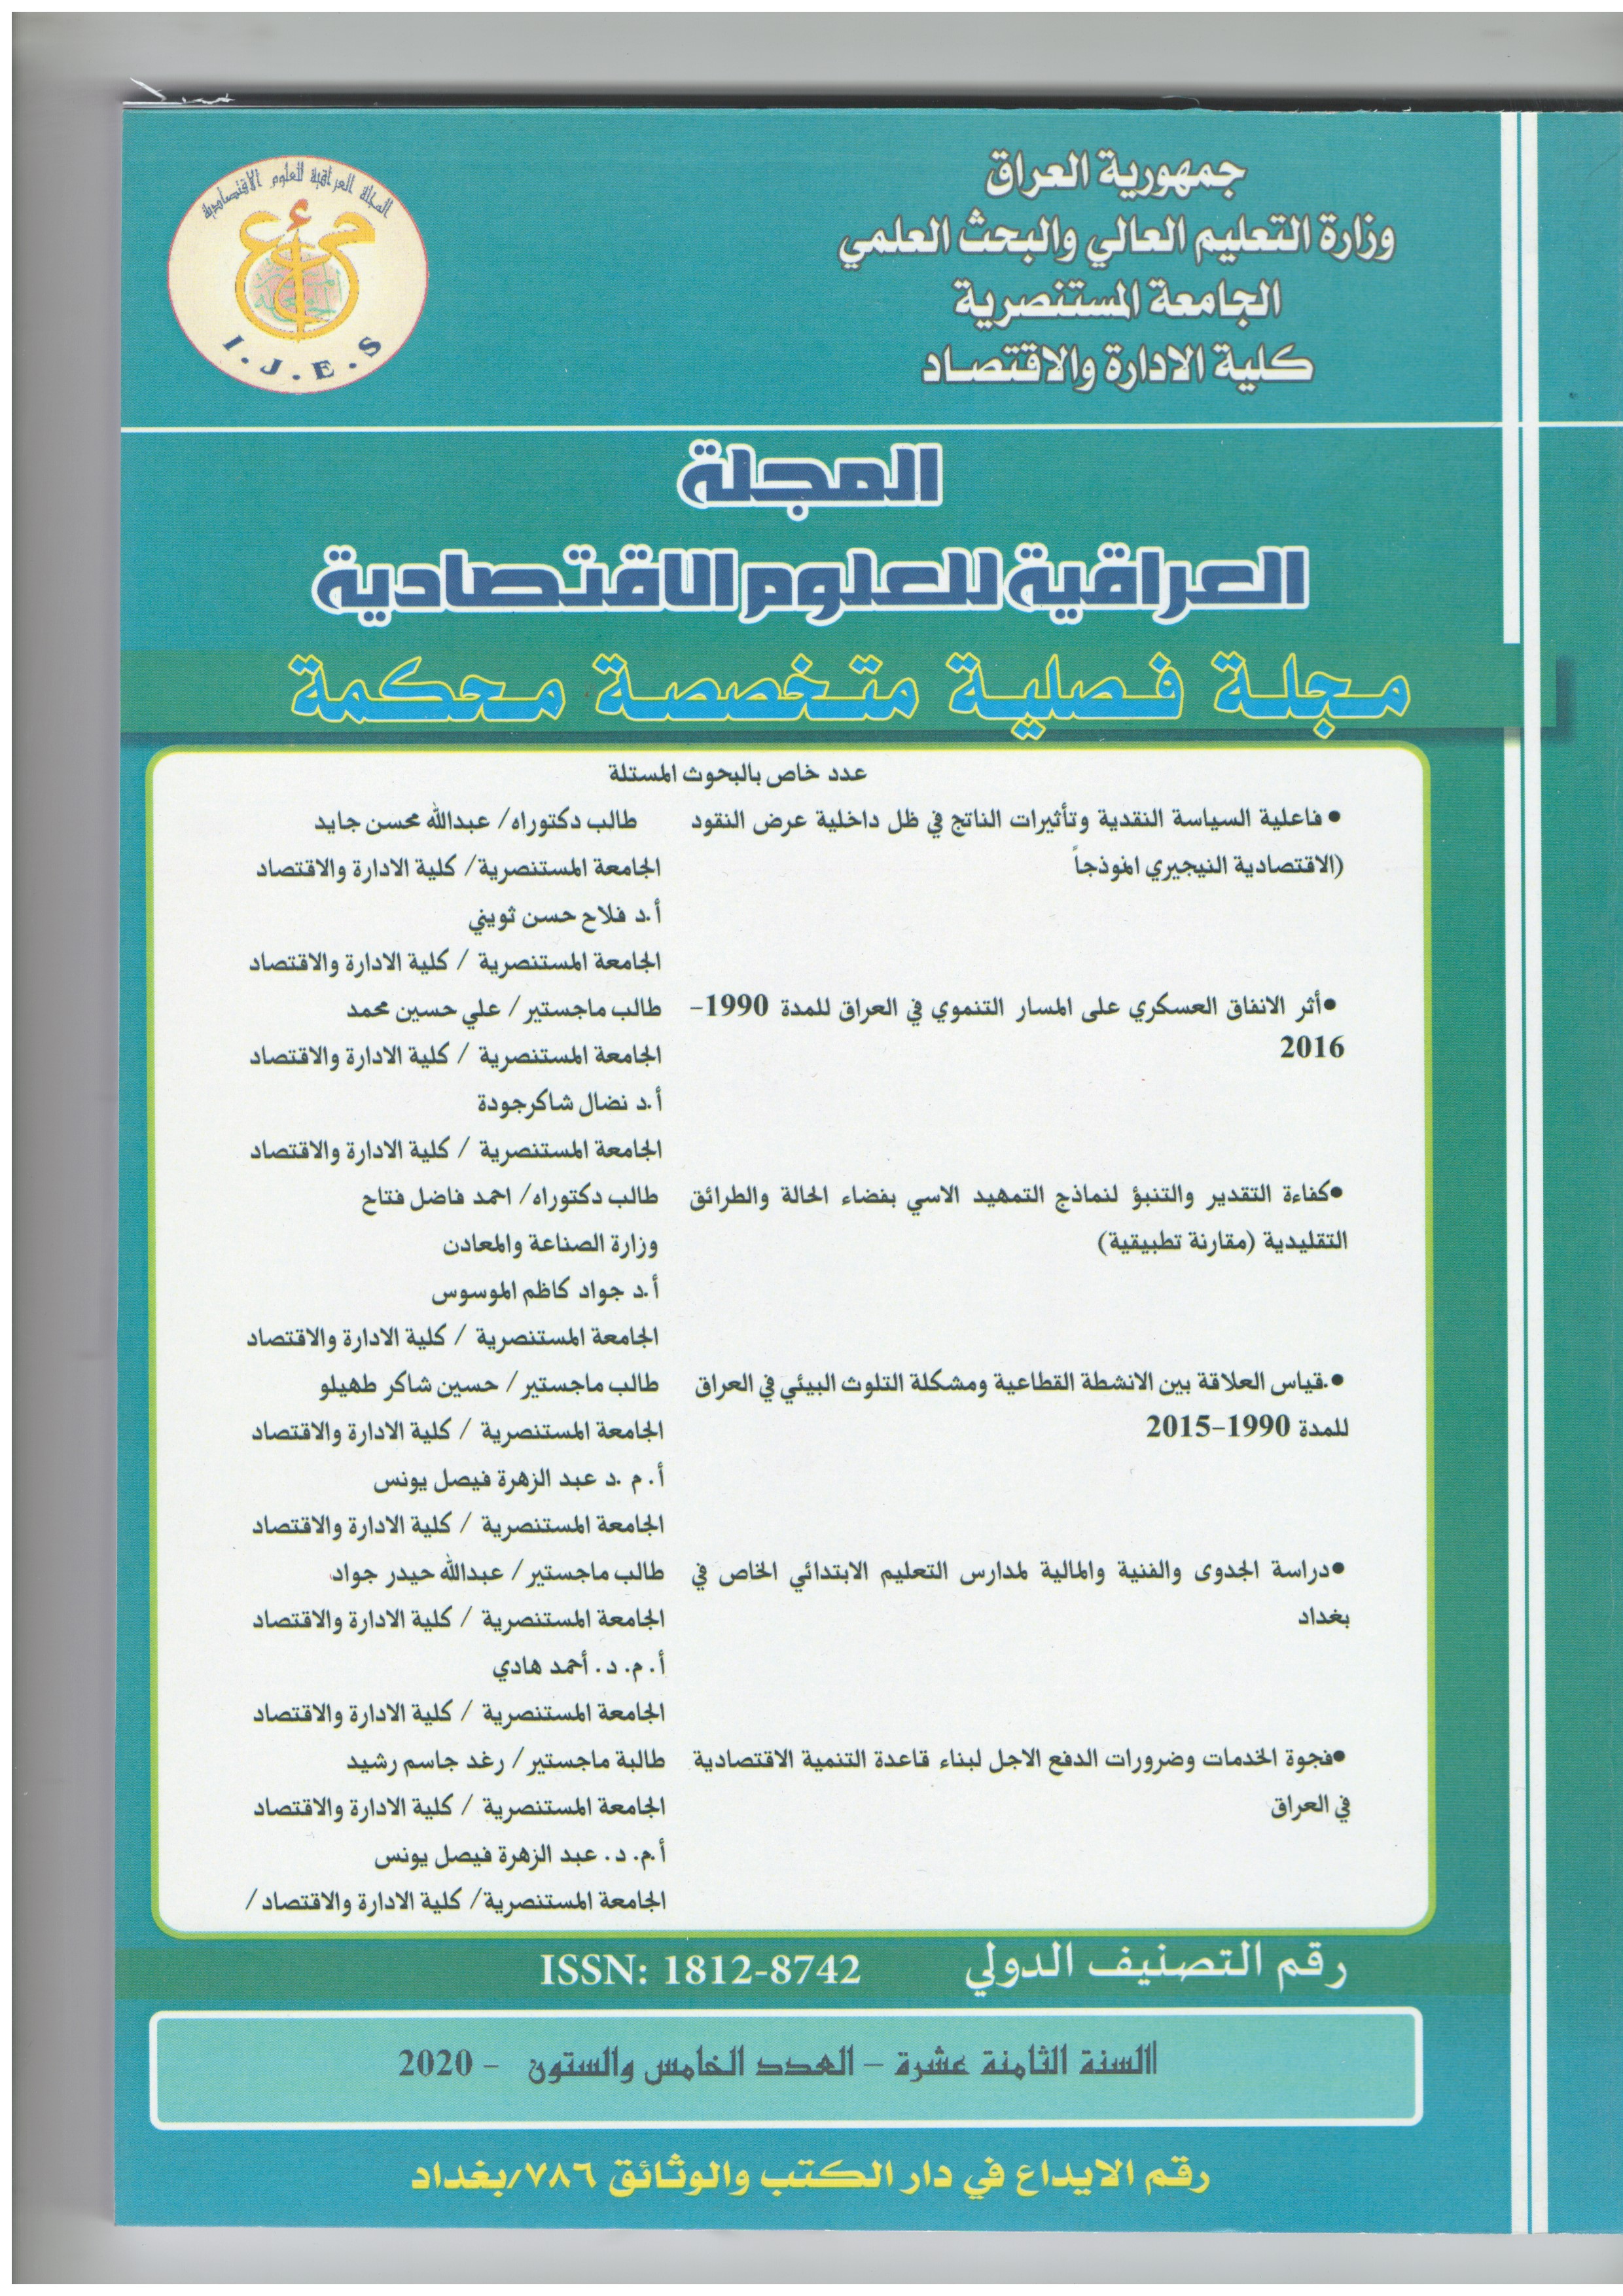 					معاينة مجلد 18 عدد 65 (2020): المجلة العراقية للعلوم الاقتصادية 
				